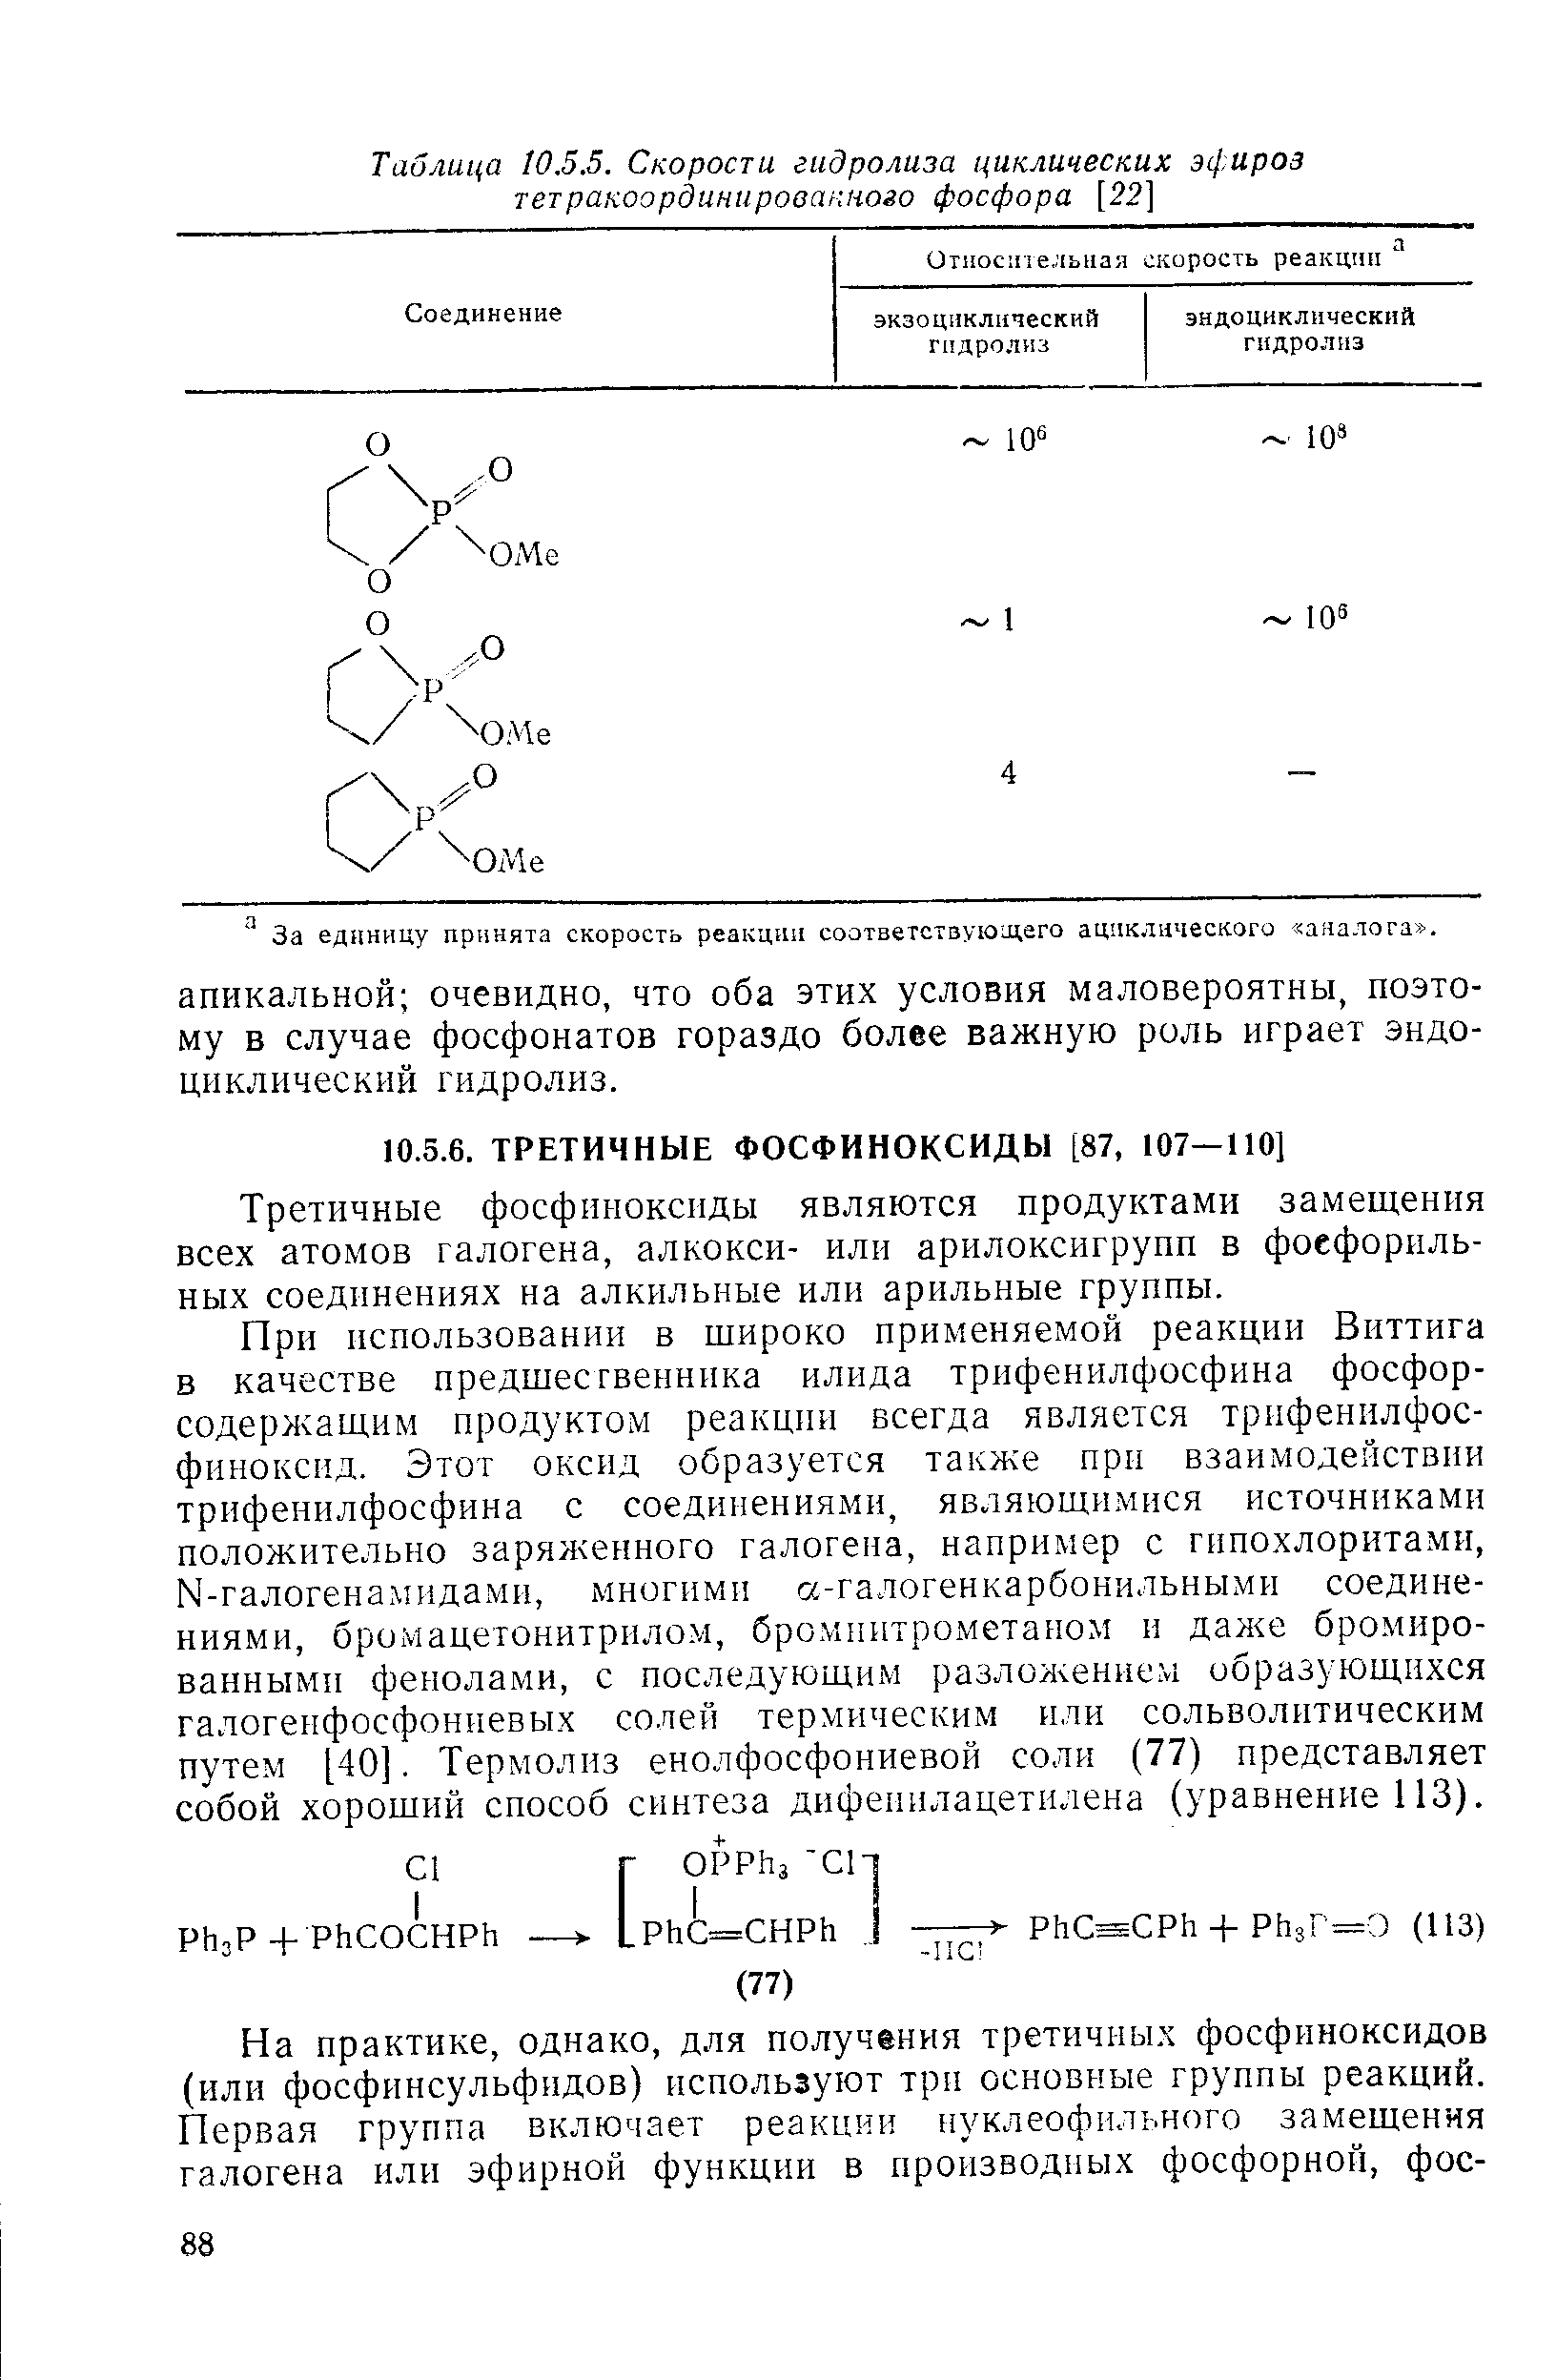 Третичные фосфиноксиды являются продуктами замещения всех атомов галогена, алкокси- или арилоксигрупп в фоефориль-ных соединениях на алкильные или арильные группы.